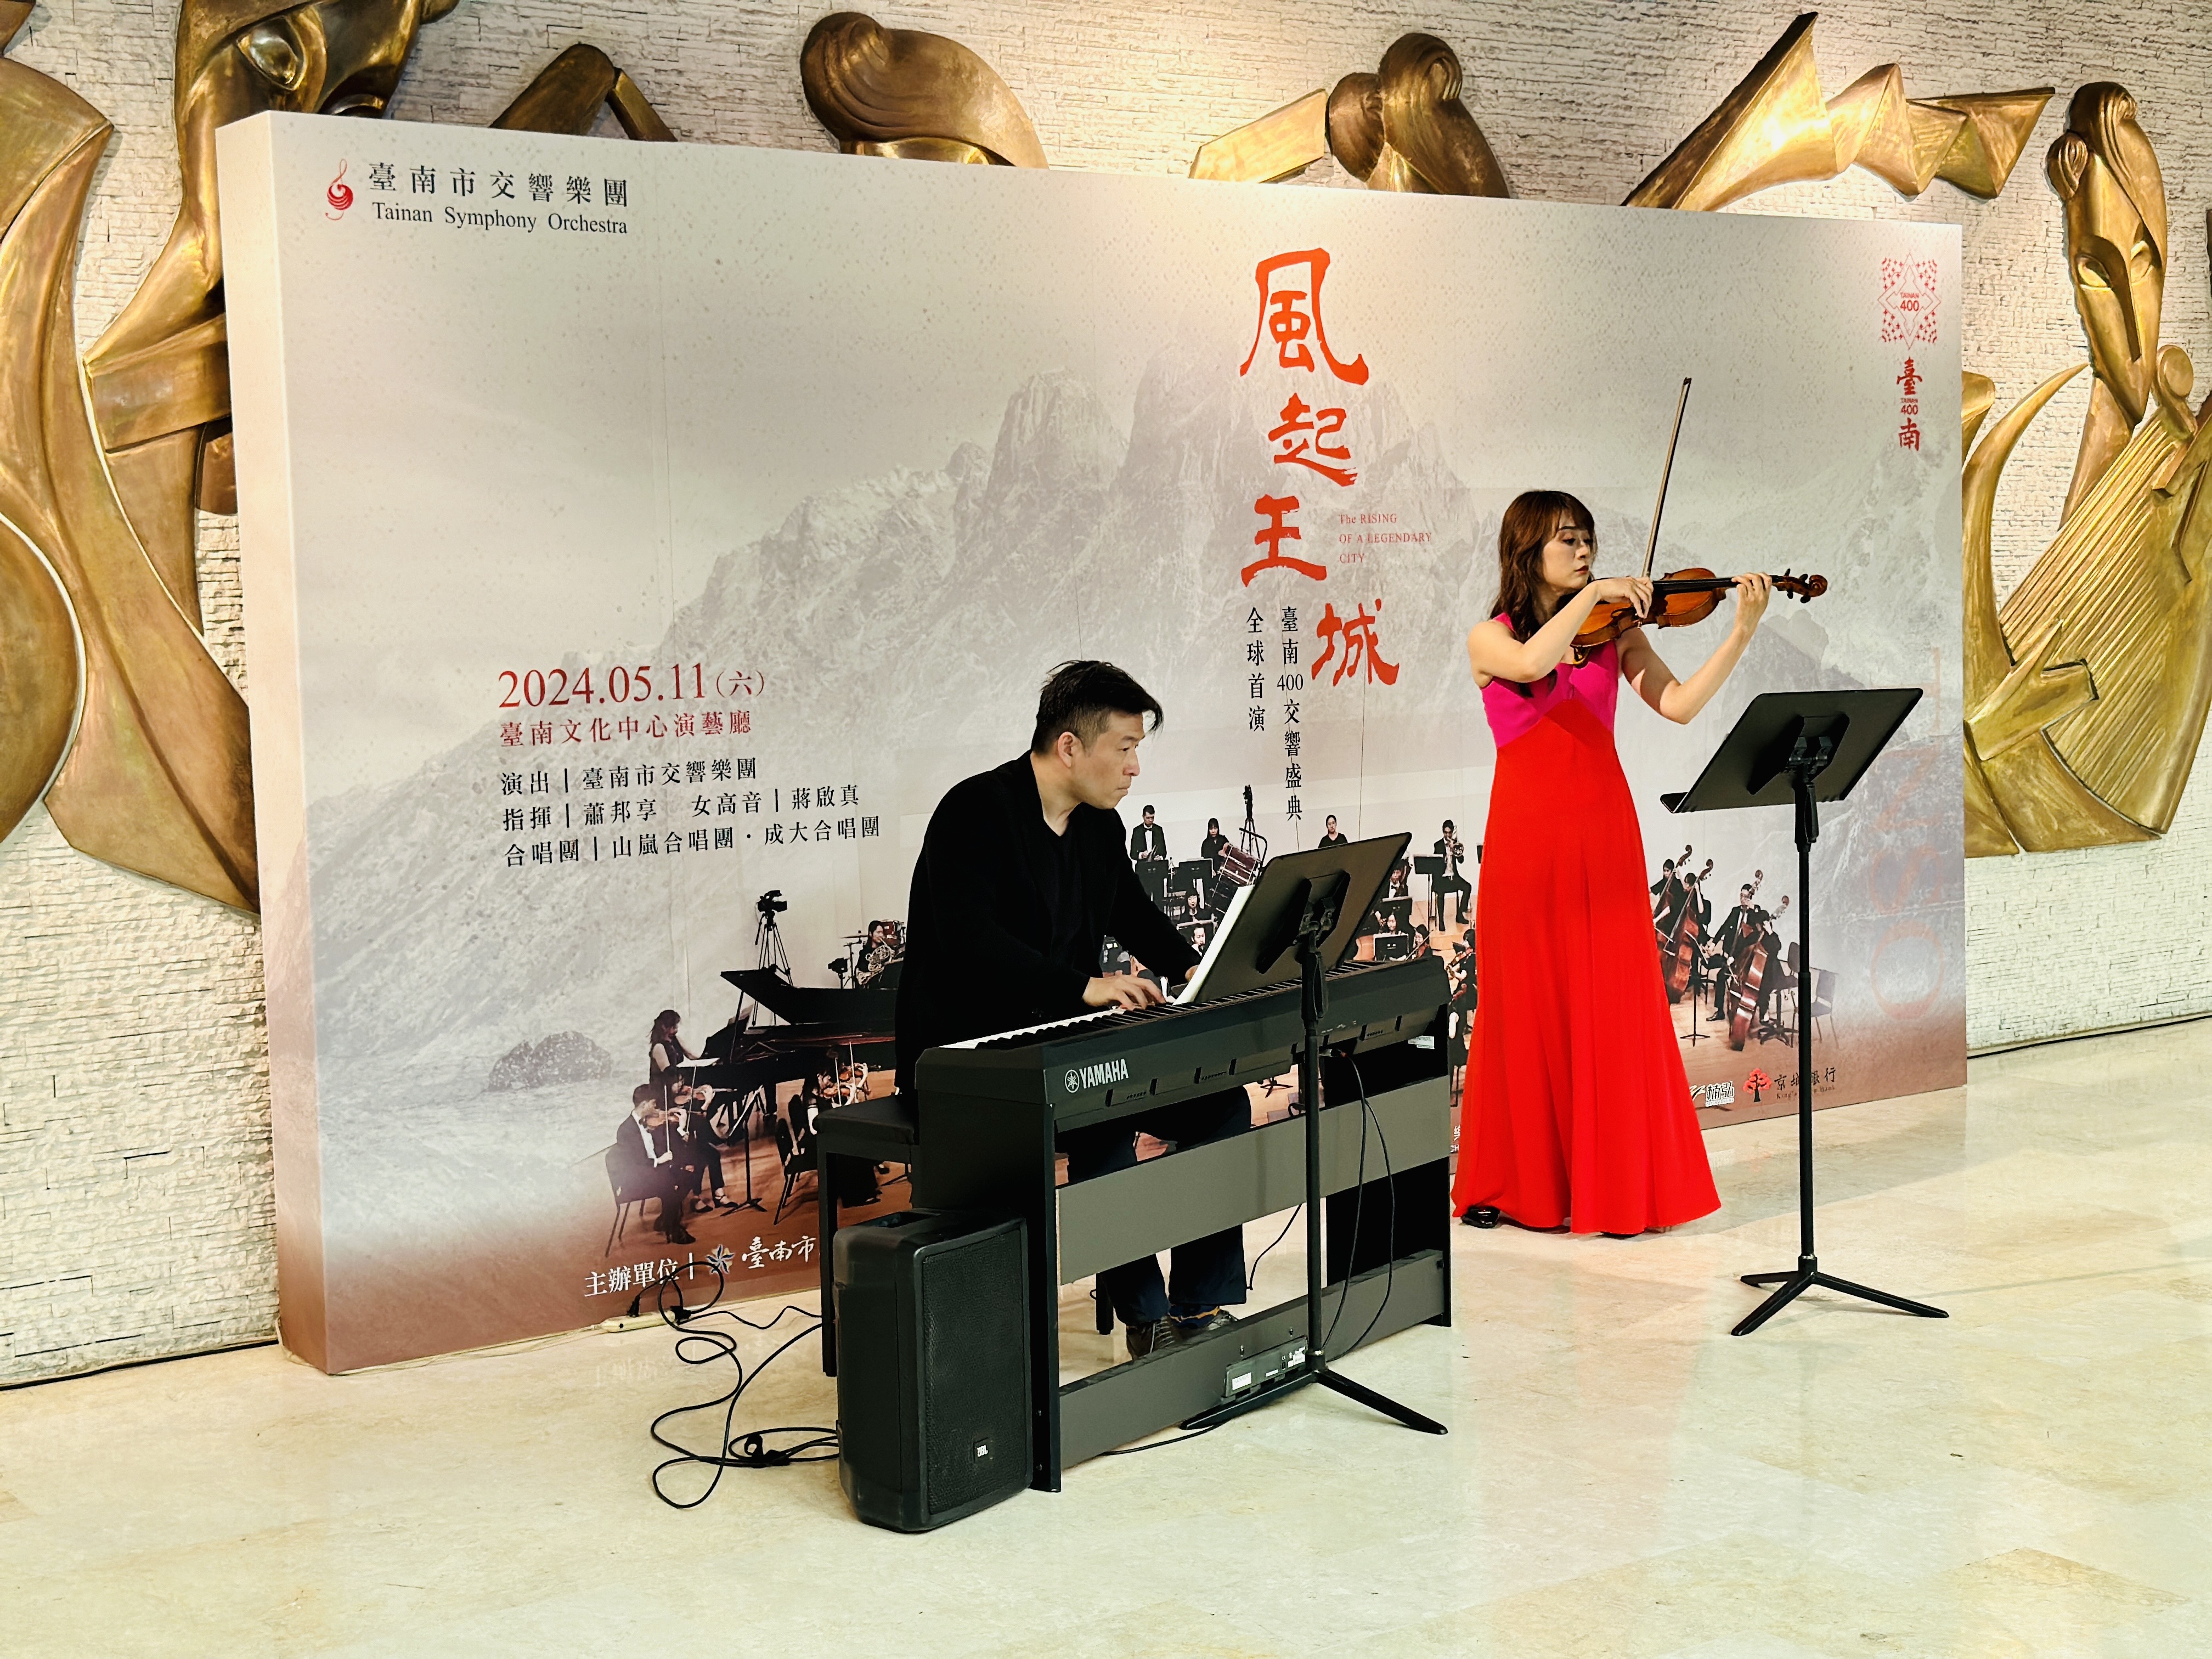 為臺南而做 迎向下個百年世代 風起王城交響四部曲 世界首演